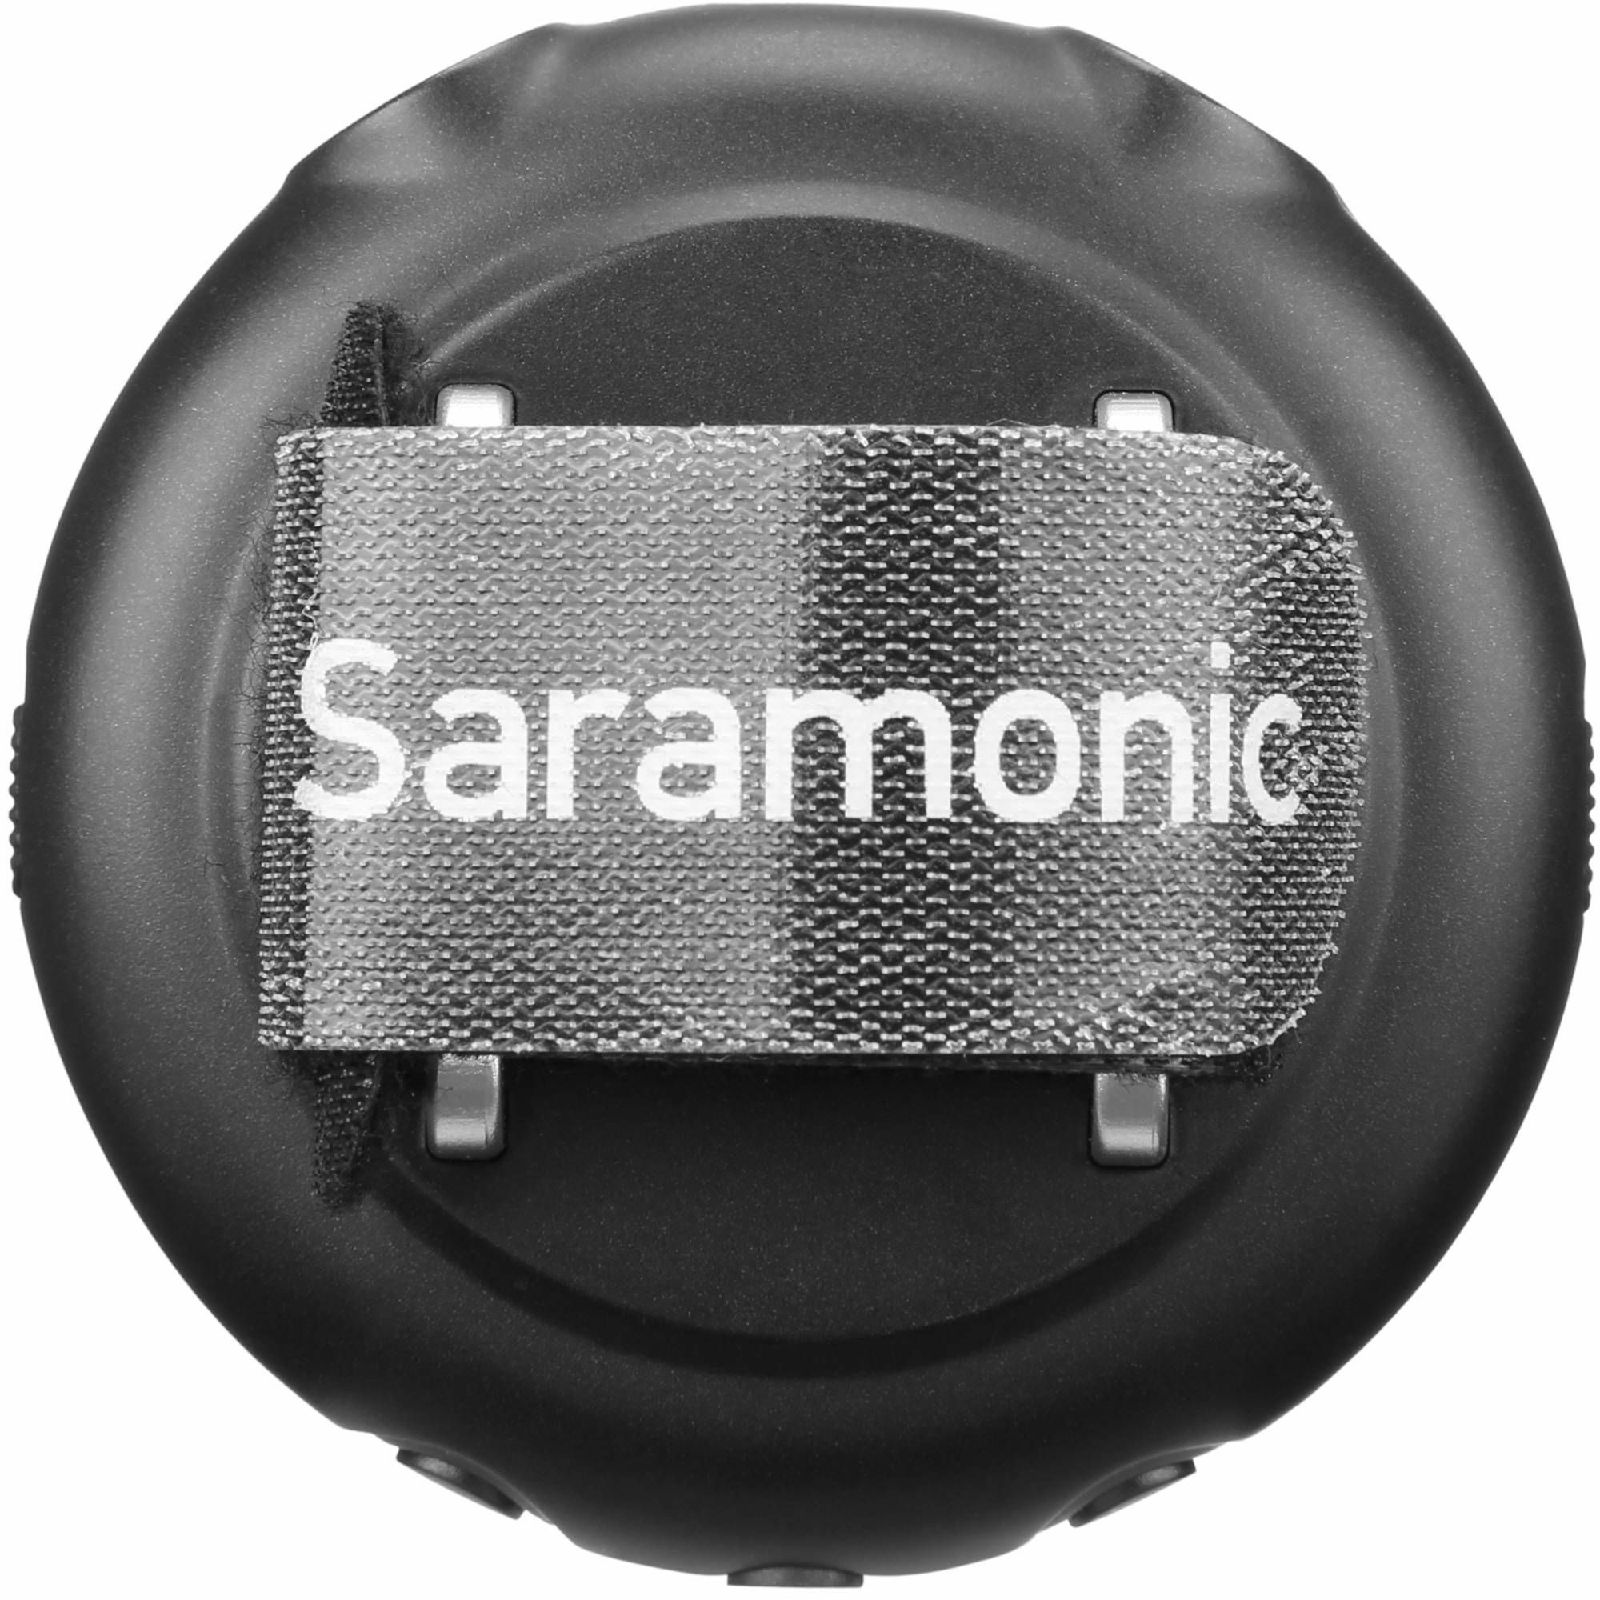 Saramonic Smart V2M 2-CH Audio Mixer za Android, iOS i računala s dva 3.5mm priključka